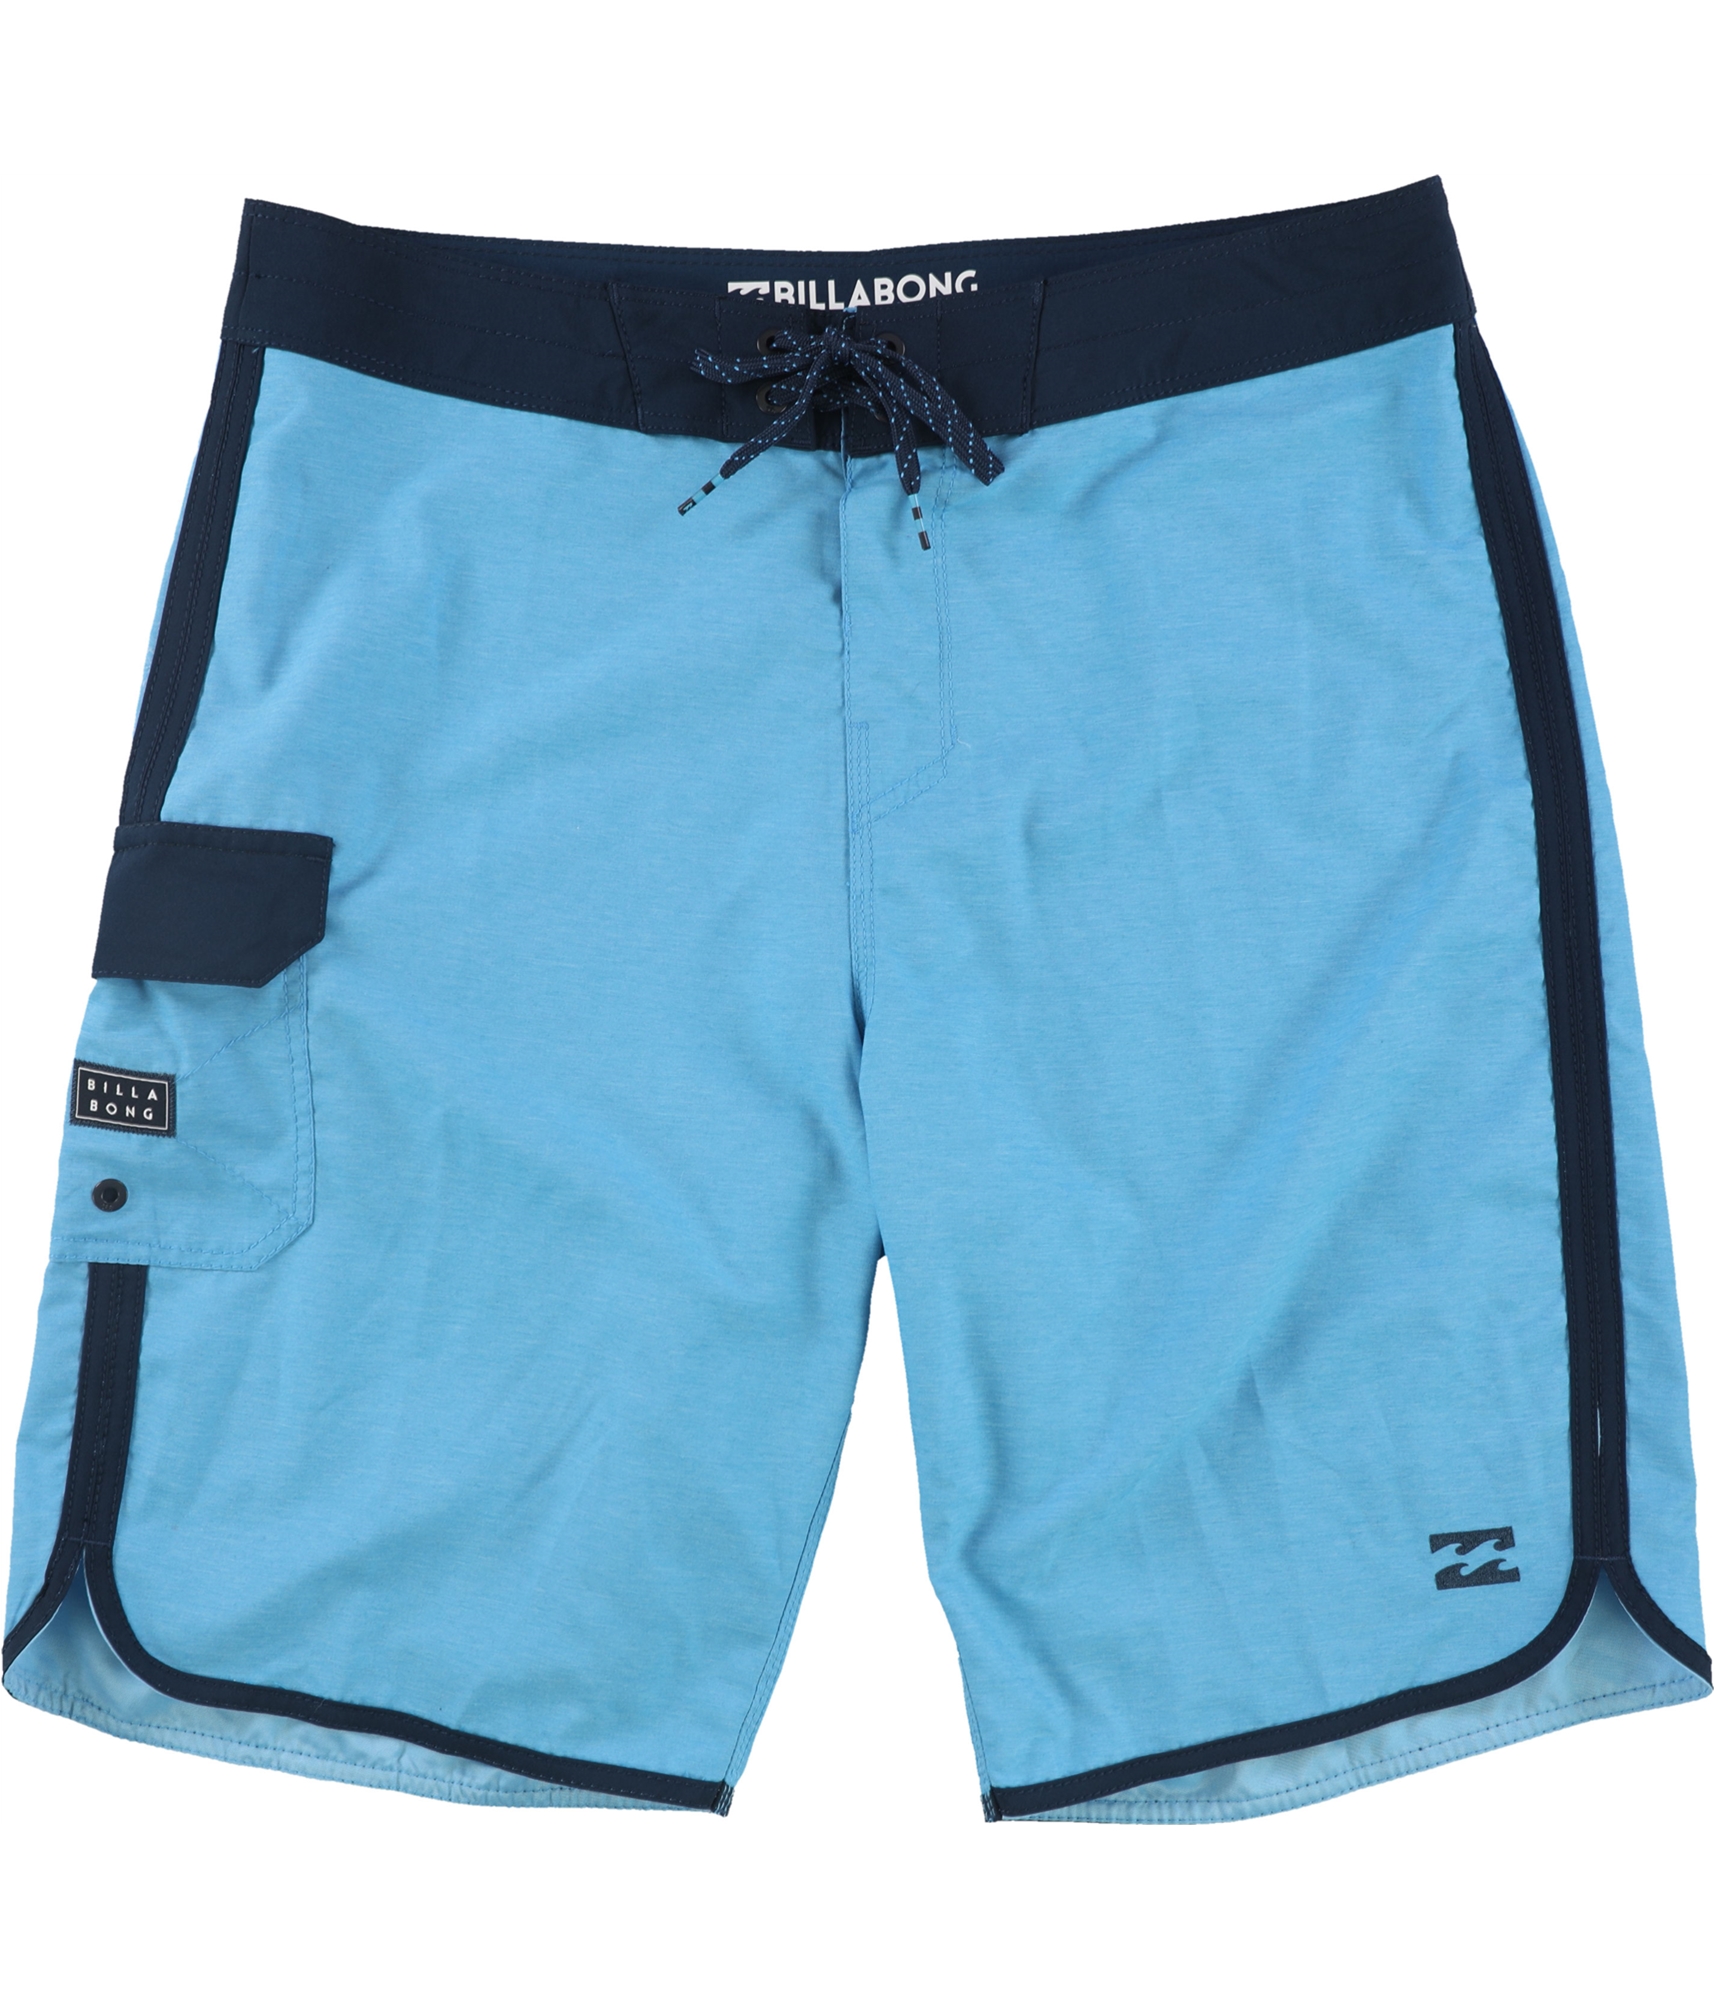 Billabong Mens 73 OG Swim Bottom Board Shorts, Blue, 33 | eBay